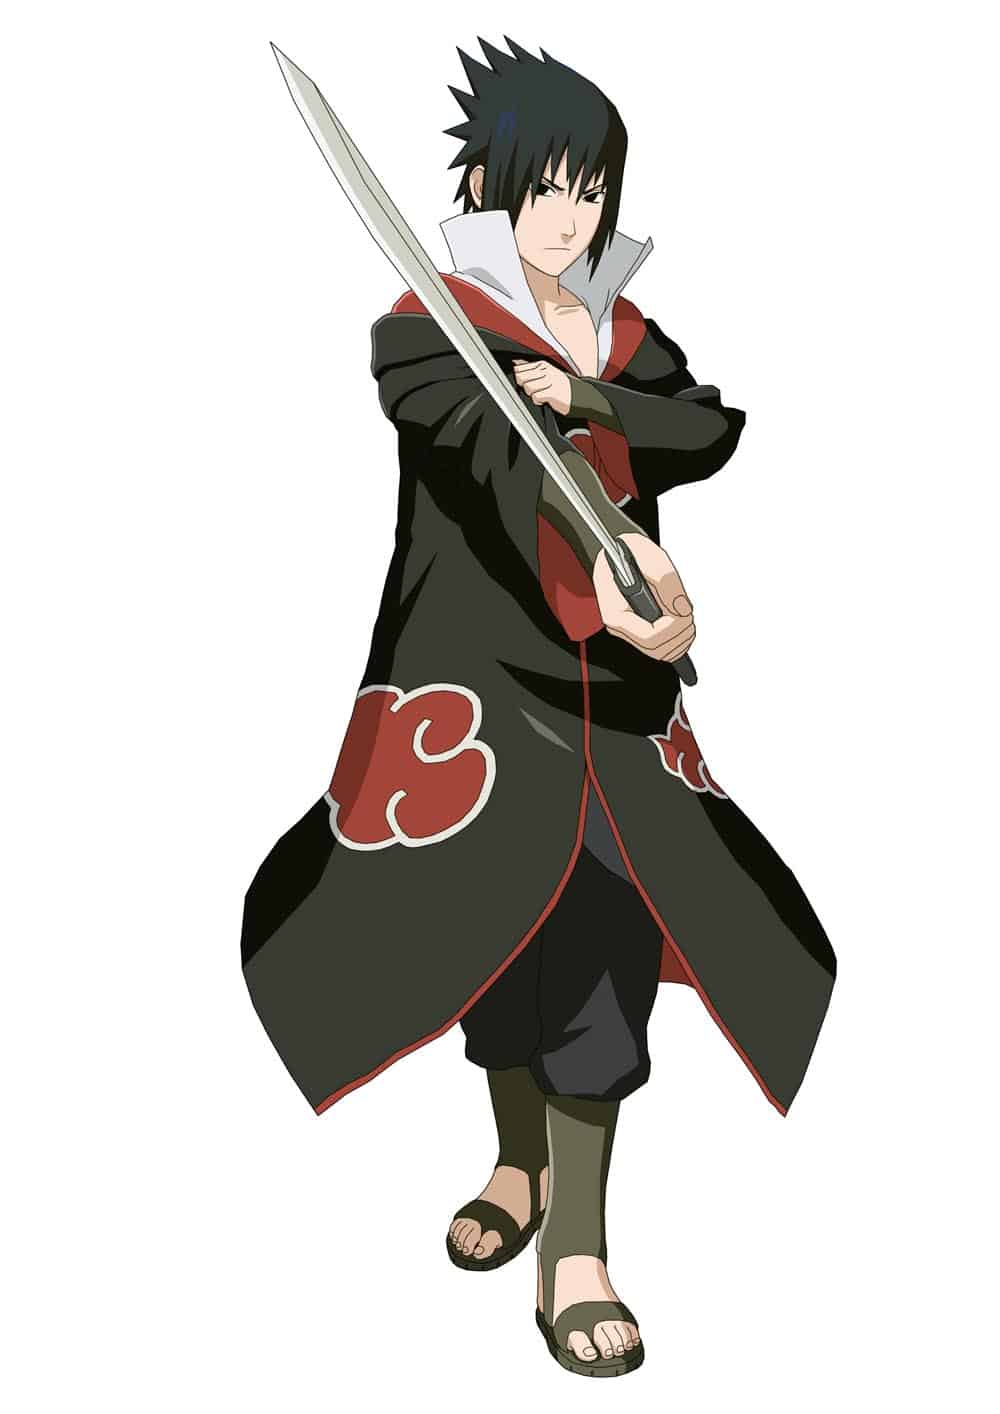 Hình Sasuke cầm kiếm cực kỳ ấn tượng